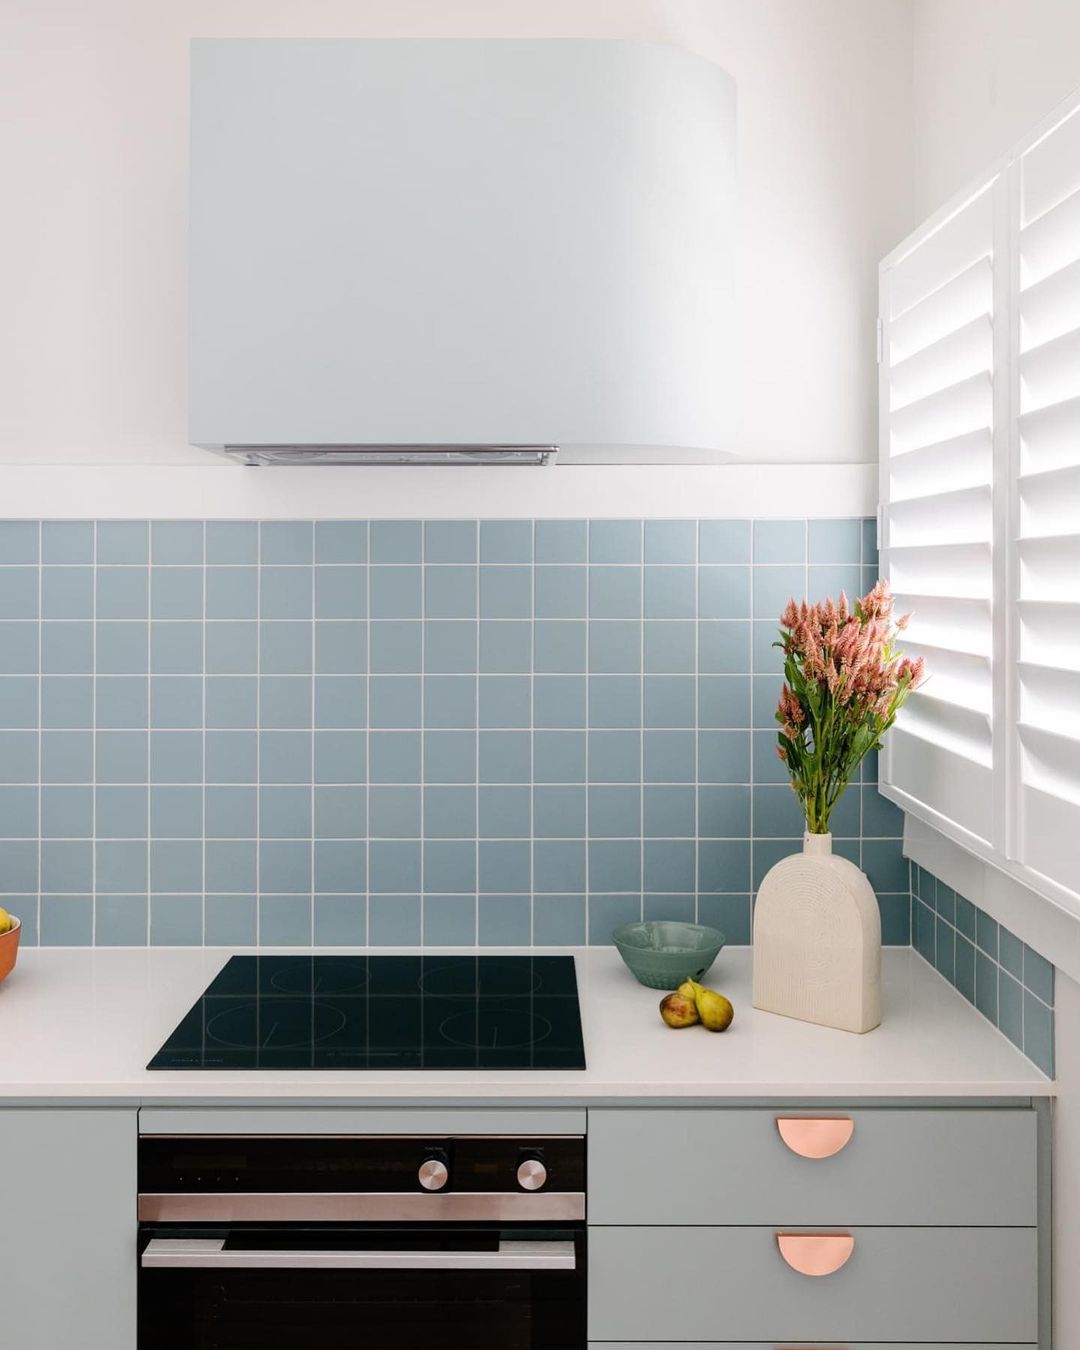 Azulejo backsplash aquático em uma cozinha branca com armários cor de menta